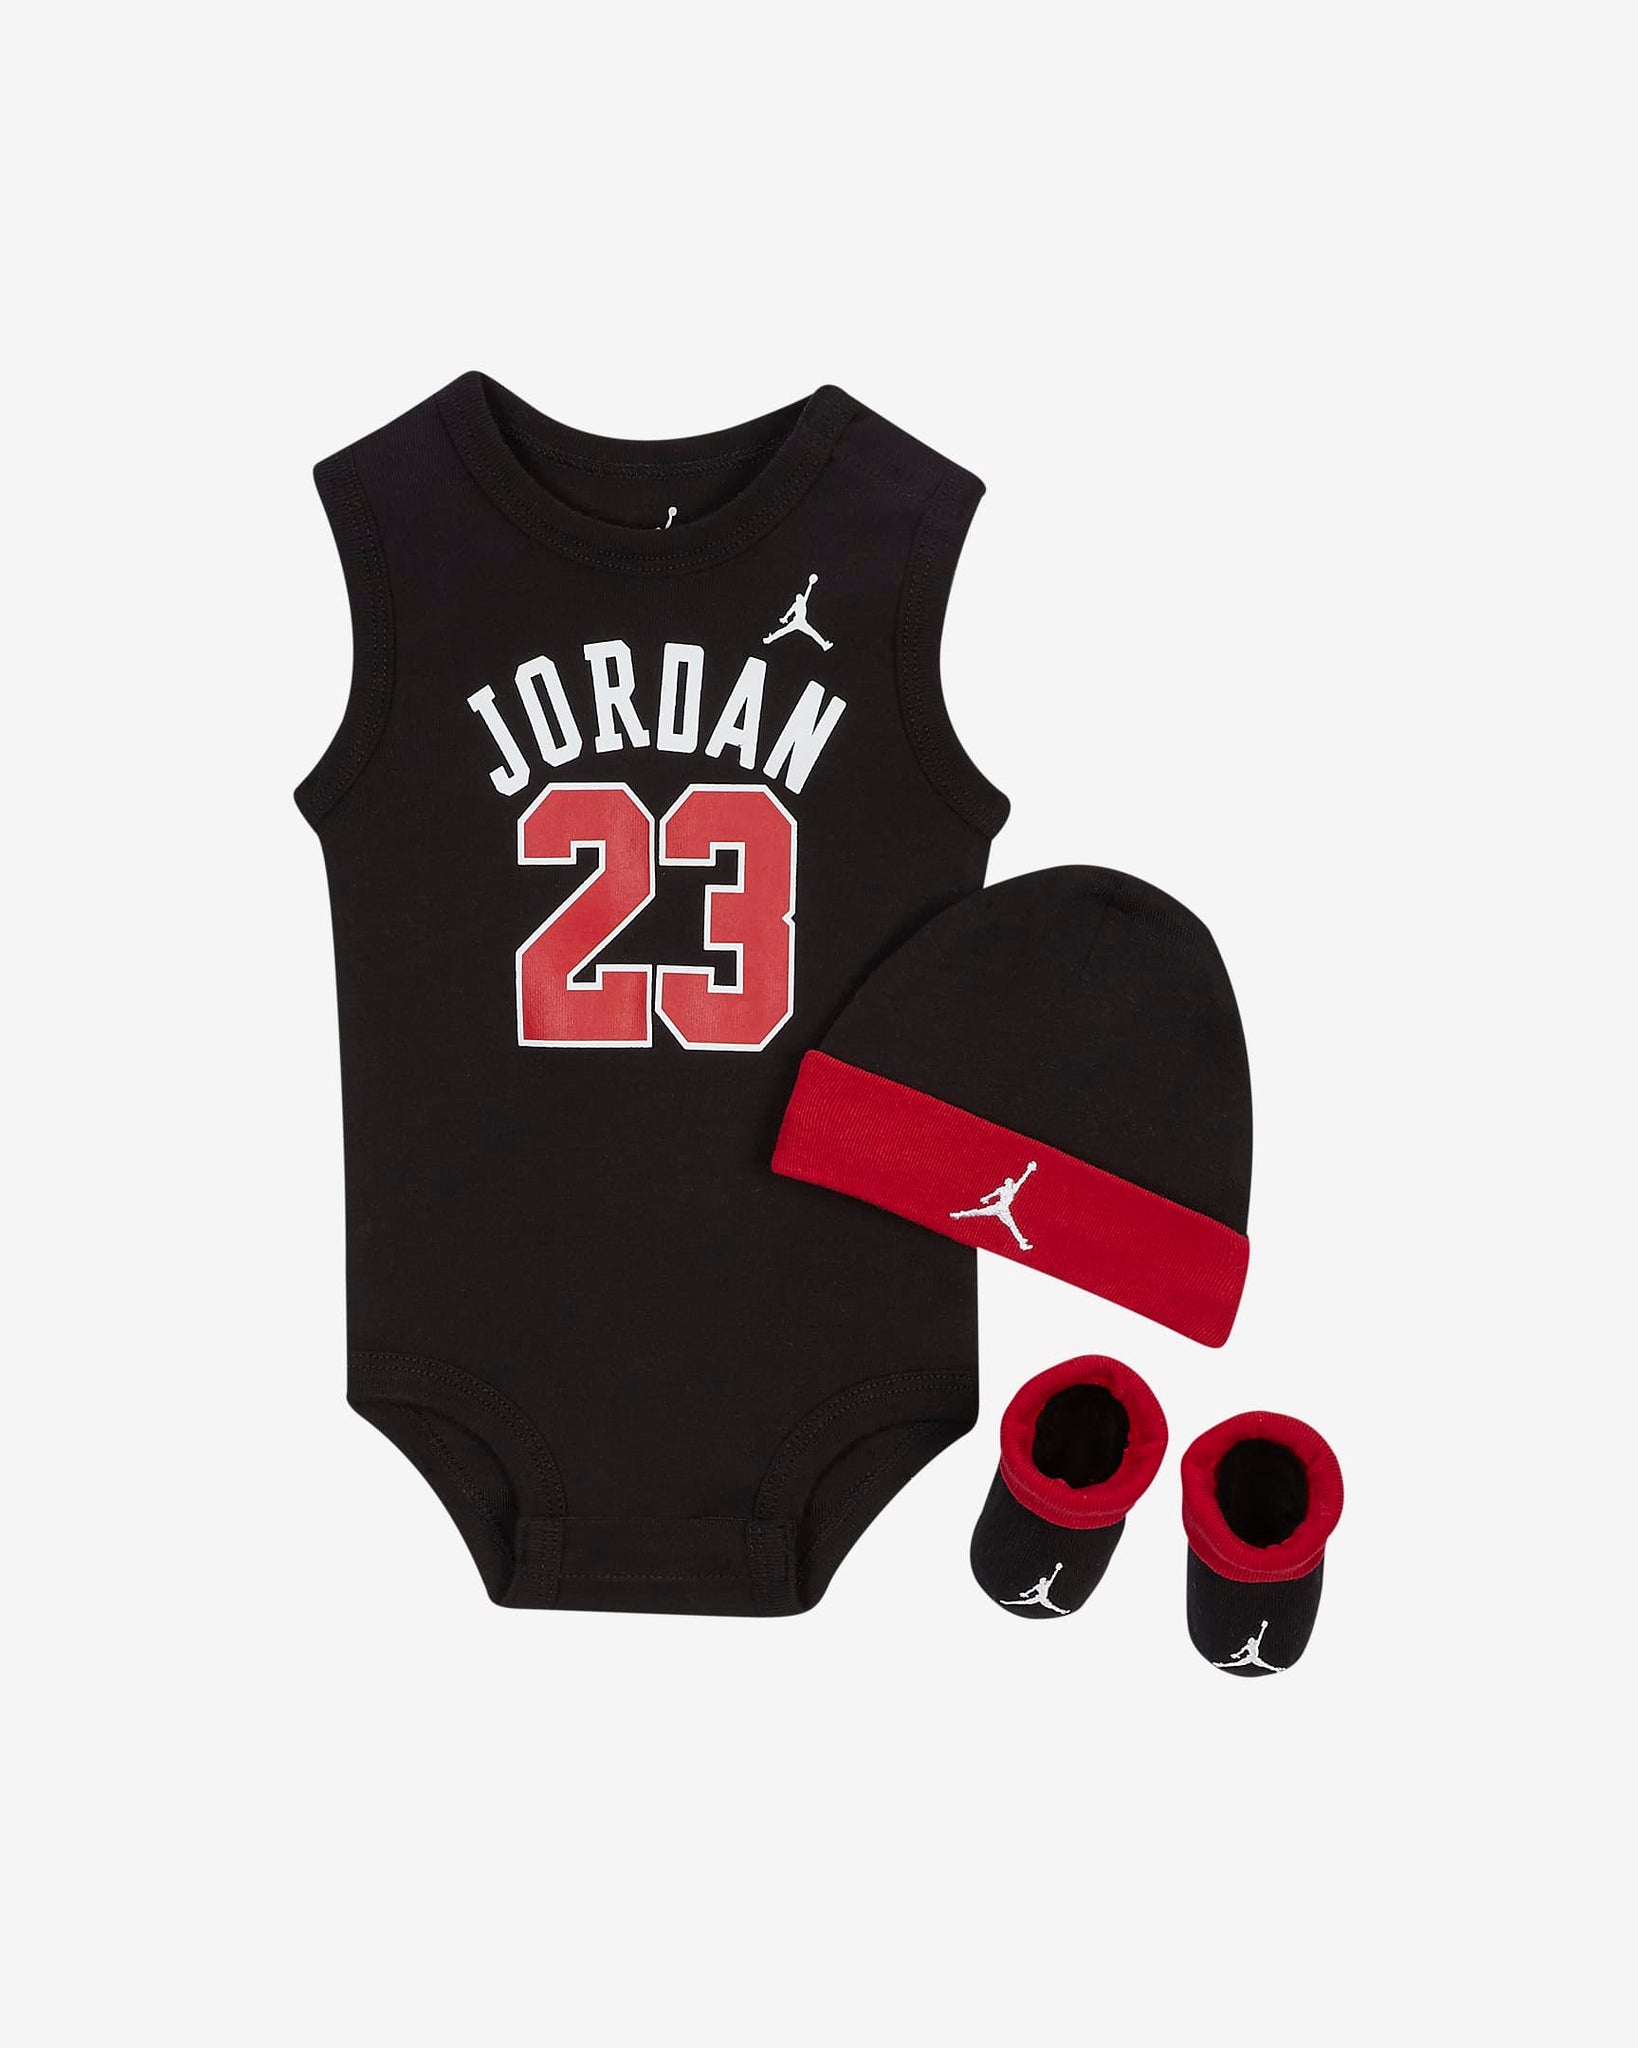 Jordan 23 Conjunto 3 piezas negro rojo